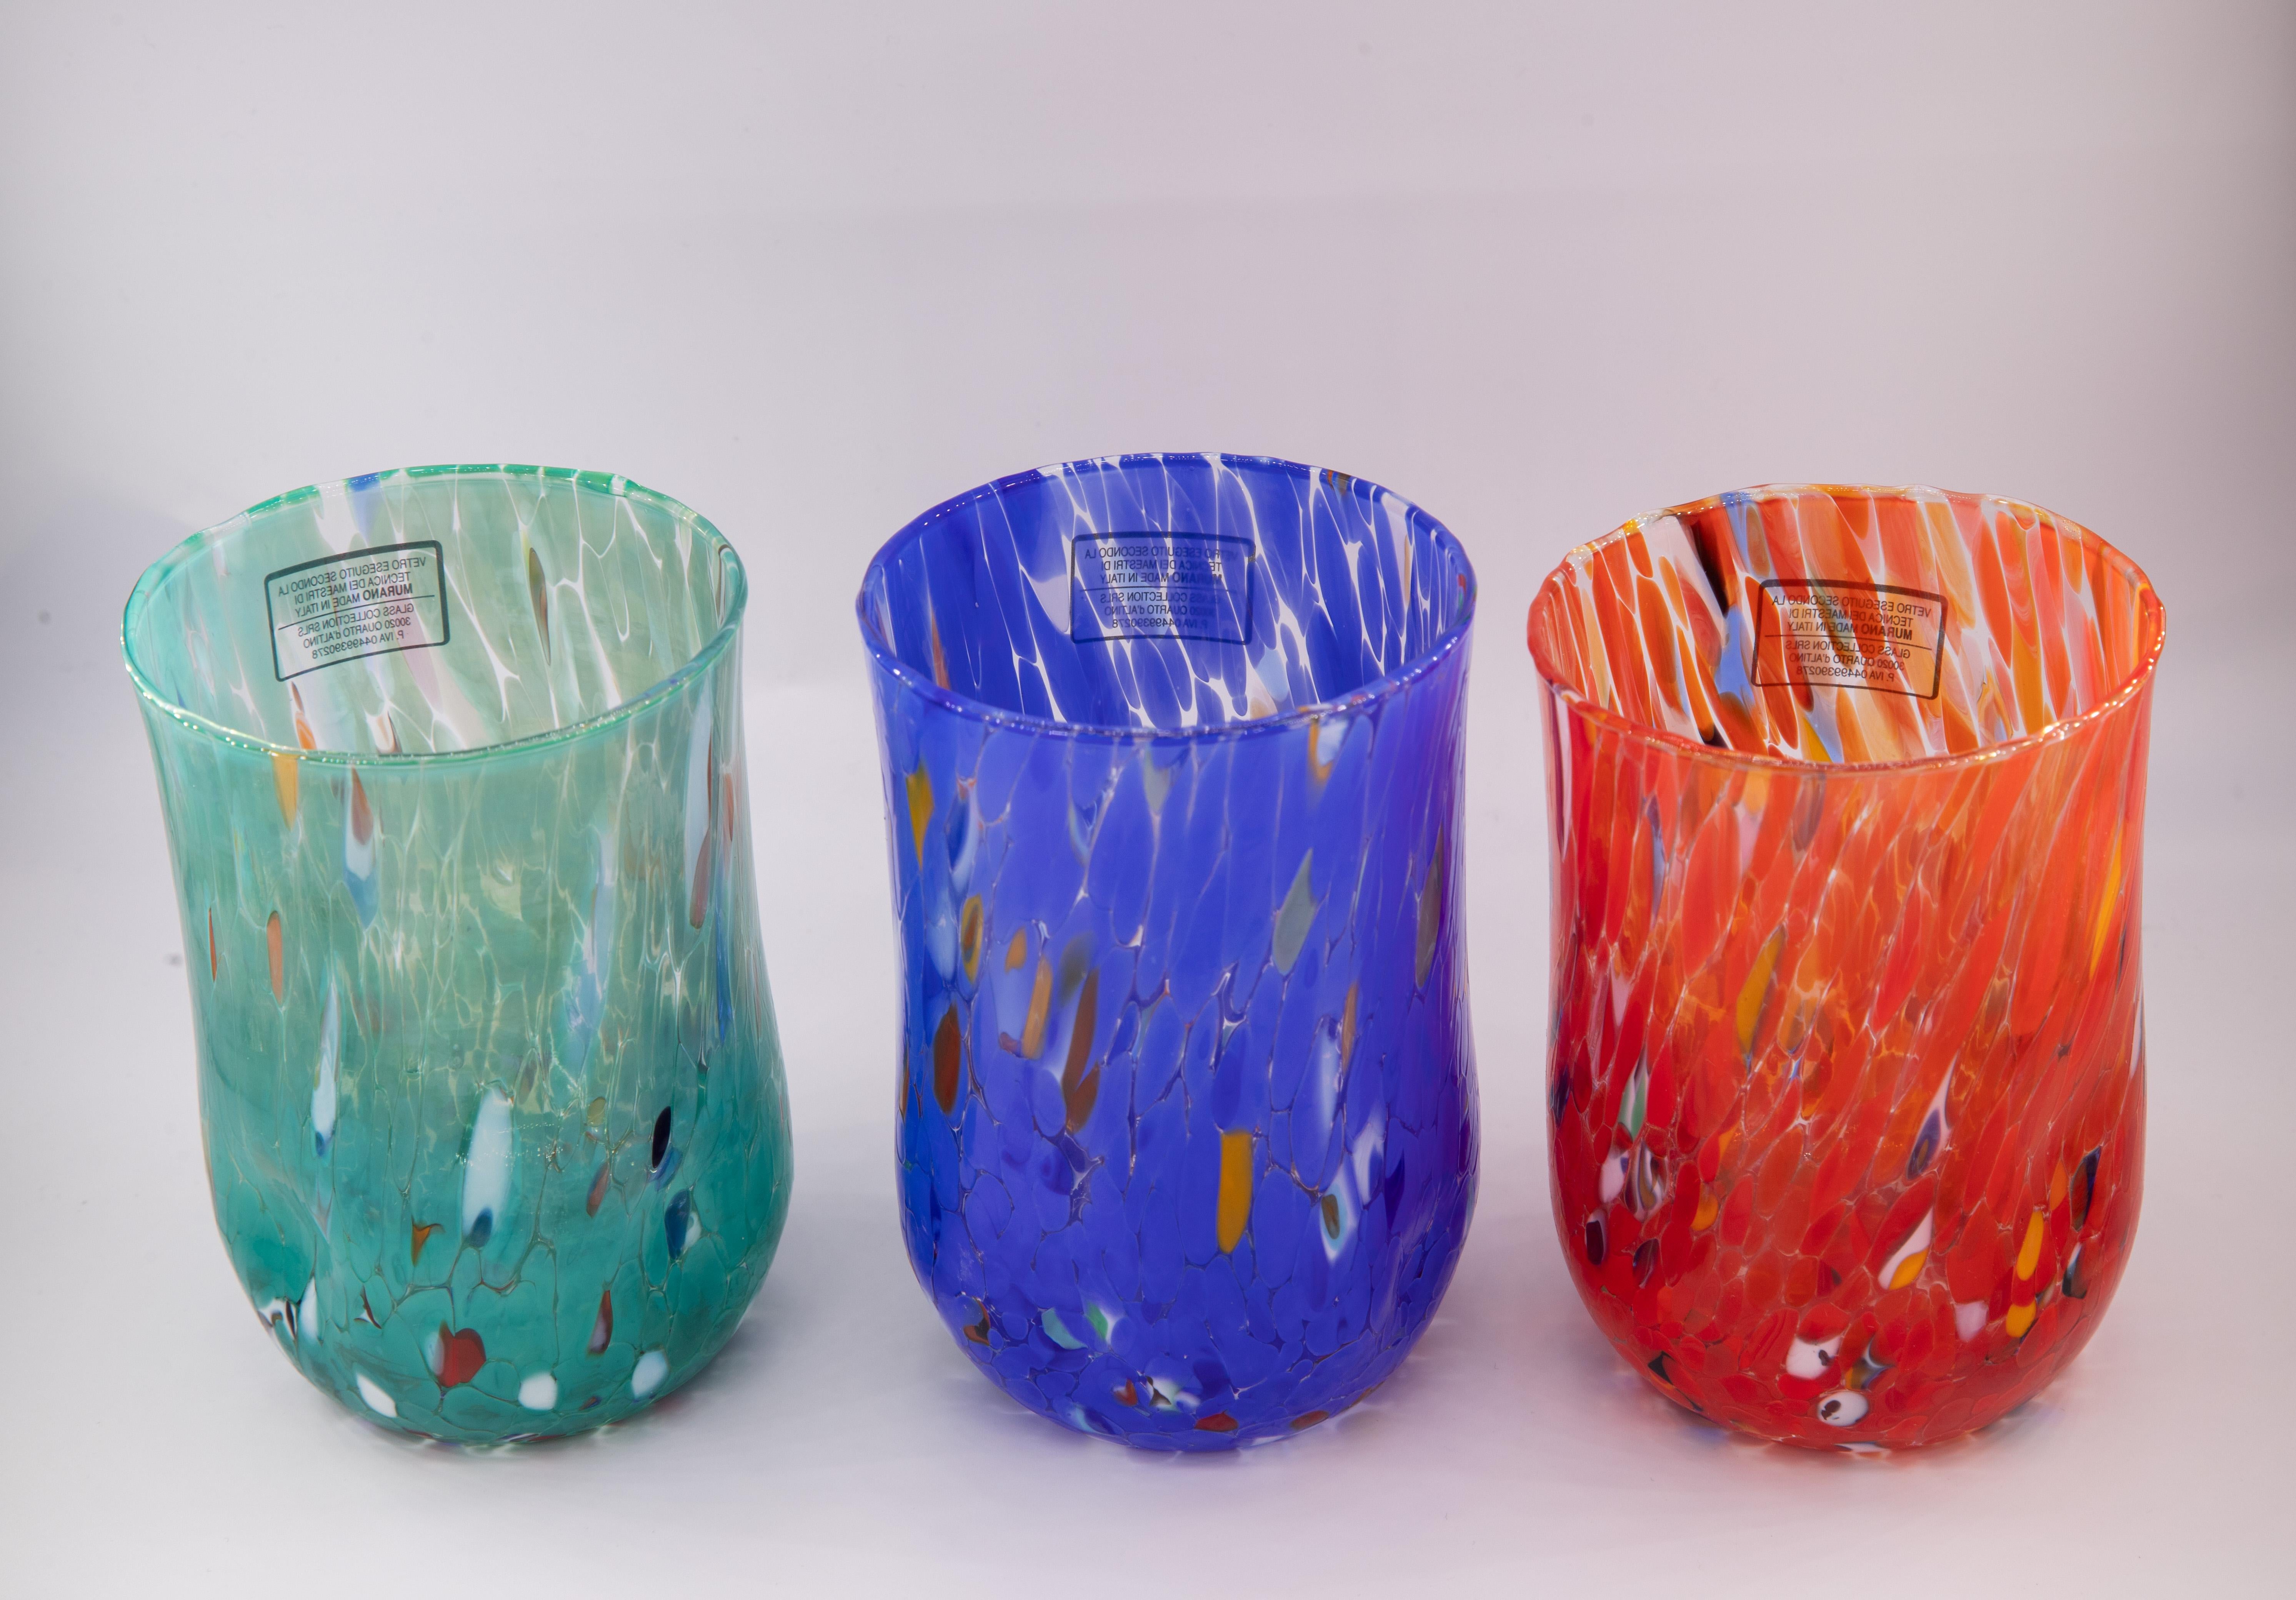 Set de six verres à eau couleur Multicolore (vert pétrole, bleu, rouge, ivoire, pervenche, moutarde) - Verre de Murano - Fabriqué en Italie.

Ces verres individuels de Murano sont inspirés du verre classique 